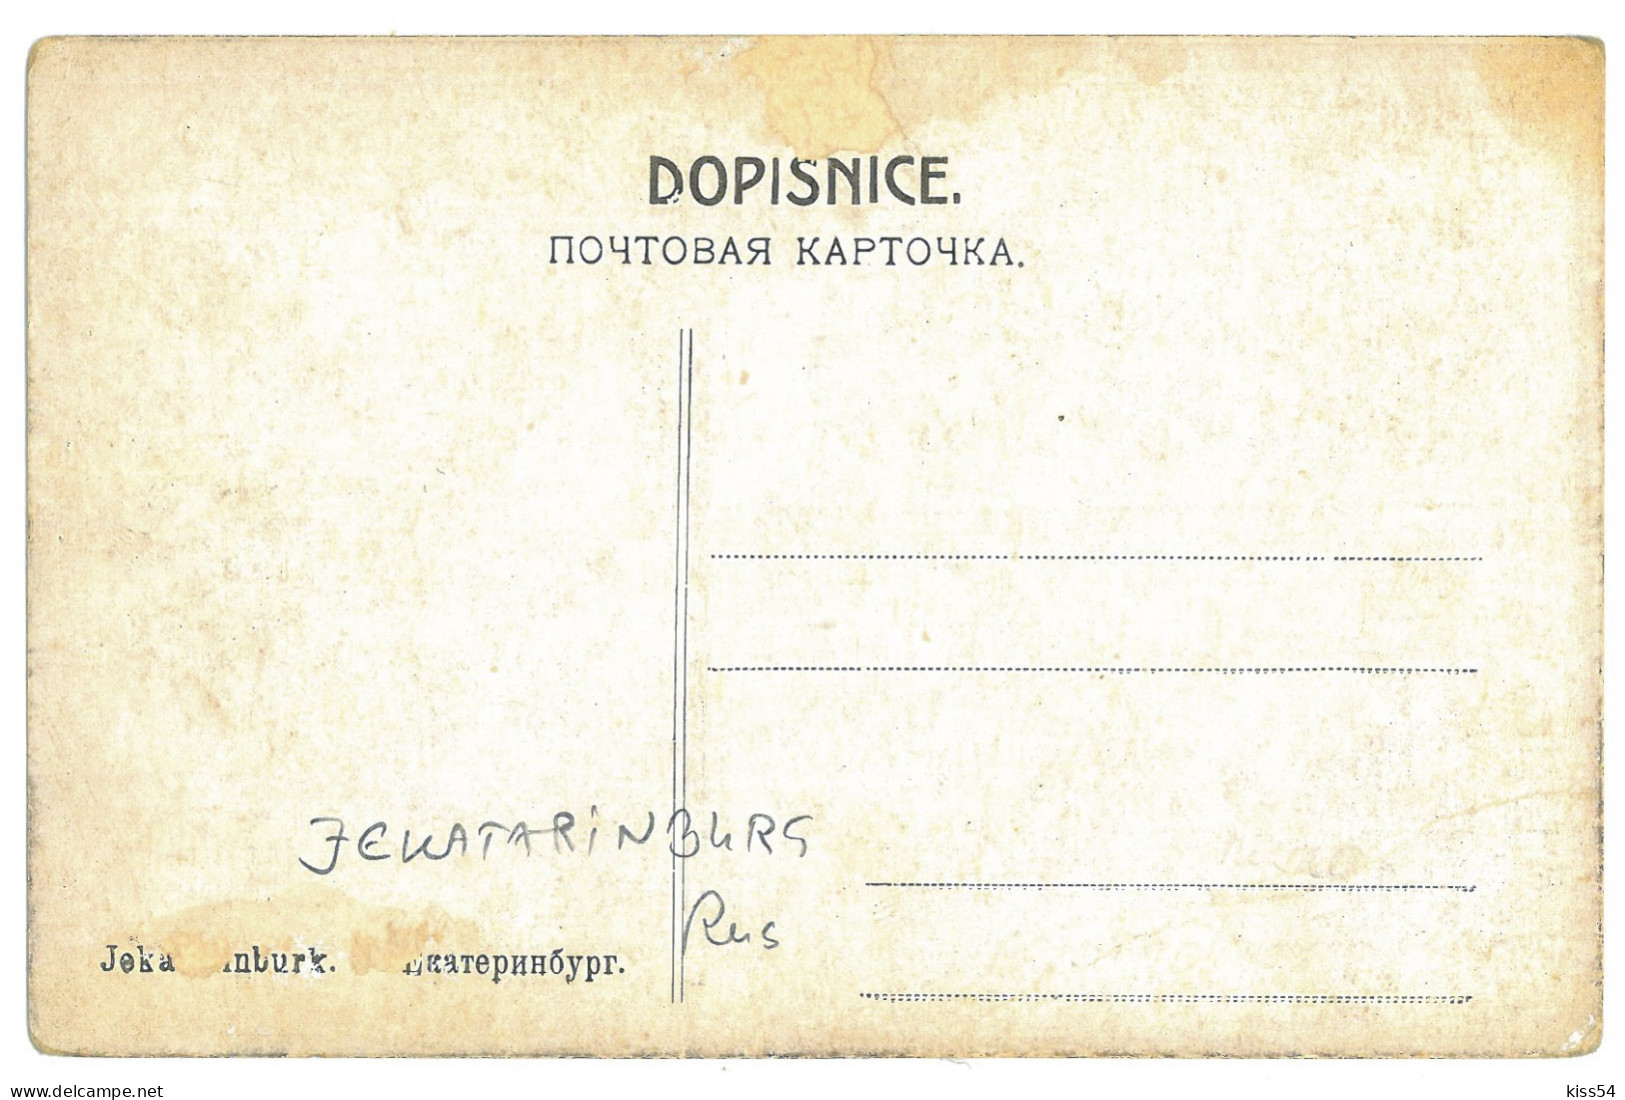 RUS 001 - 21883 EKATERINBURG, Market, Russia - Old Postcard - Unused - Russia